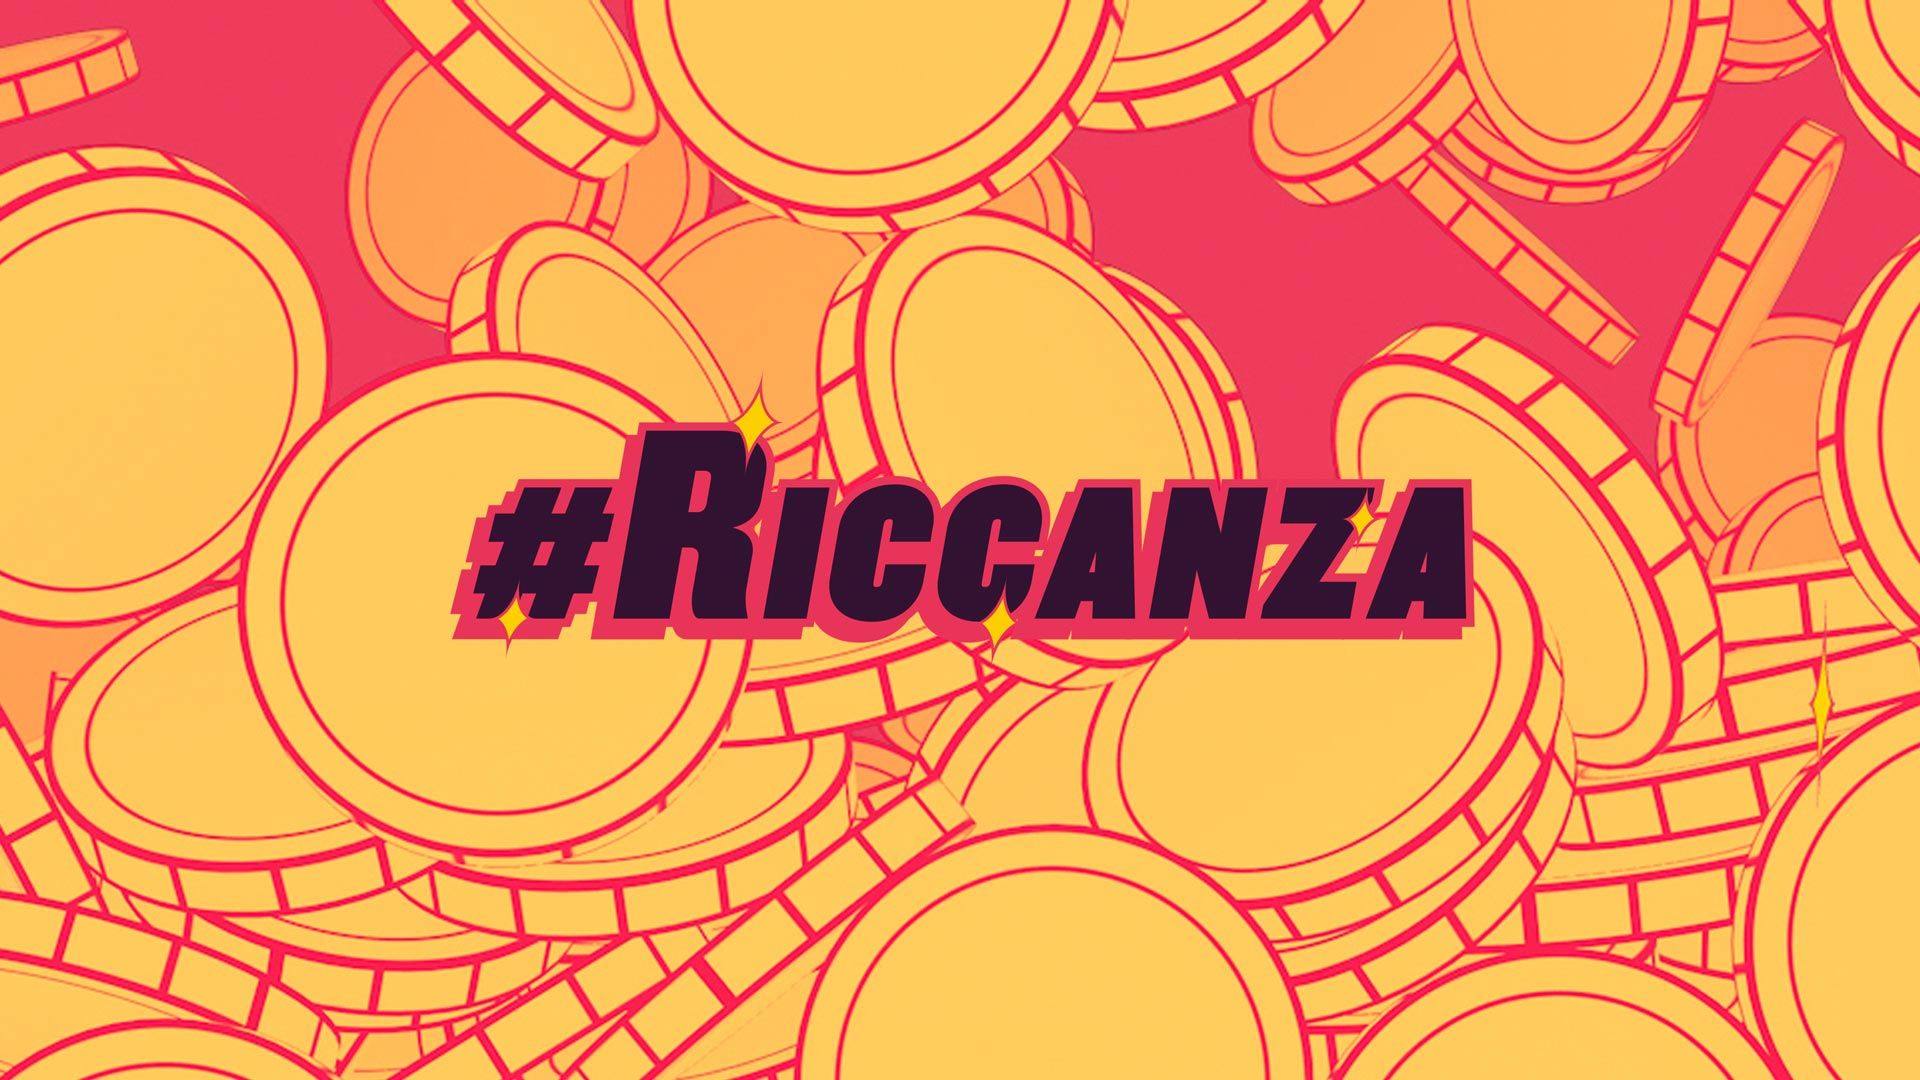 Pluto TV #Riccanza